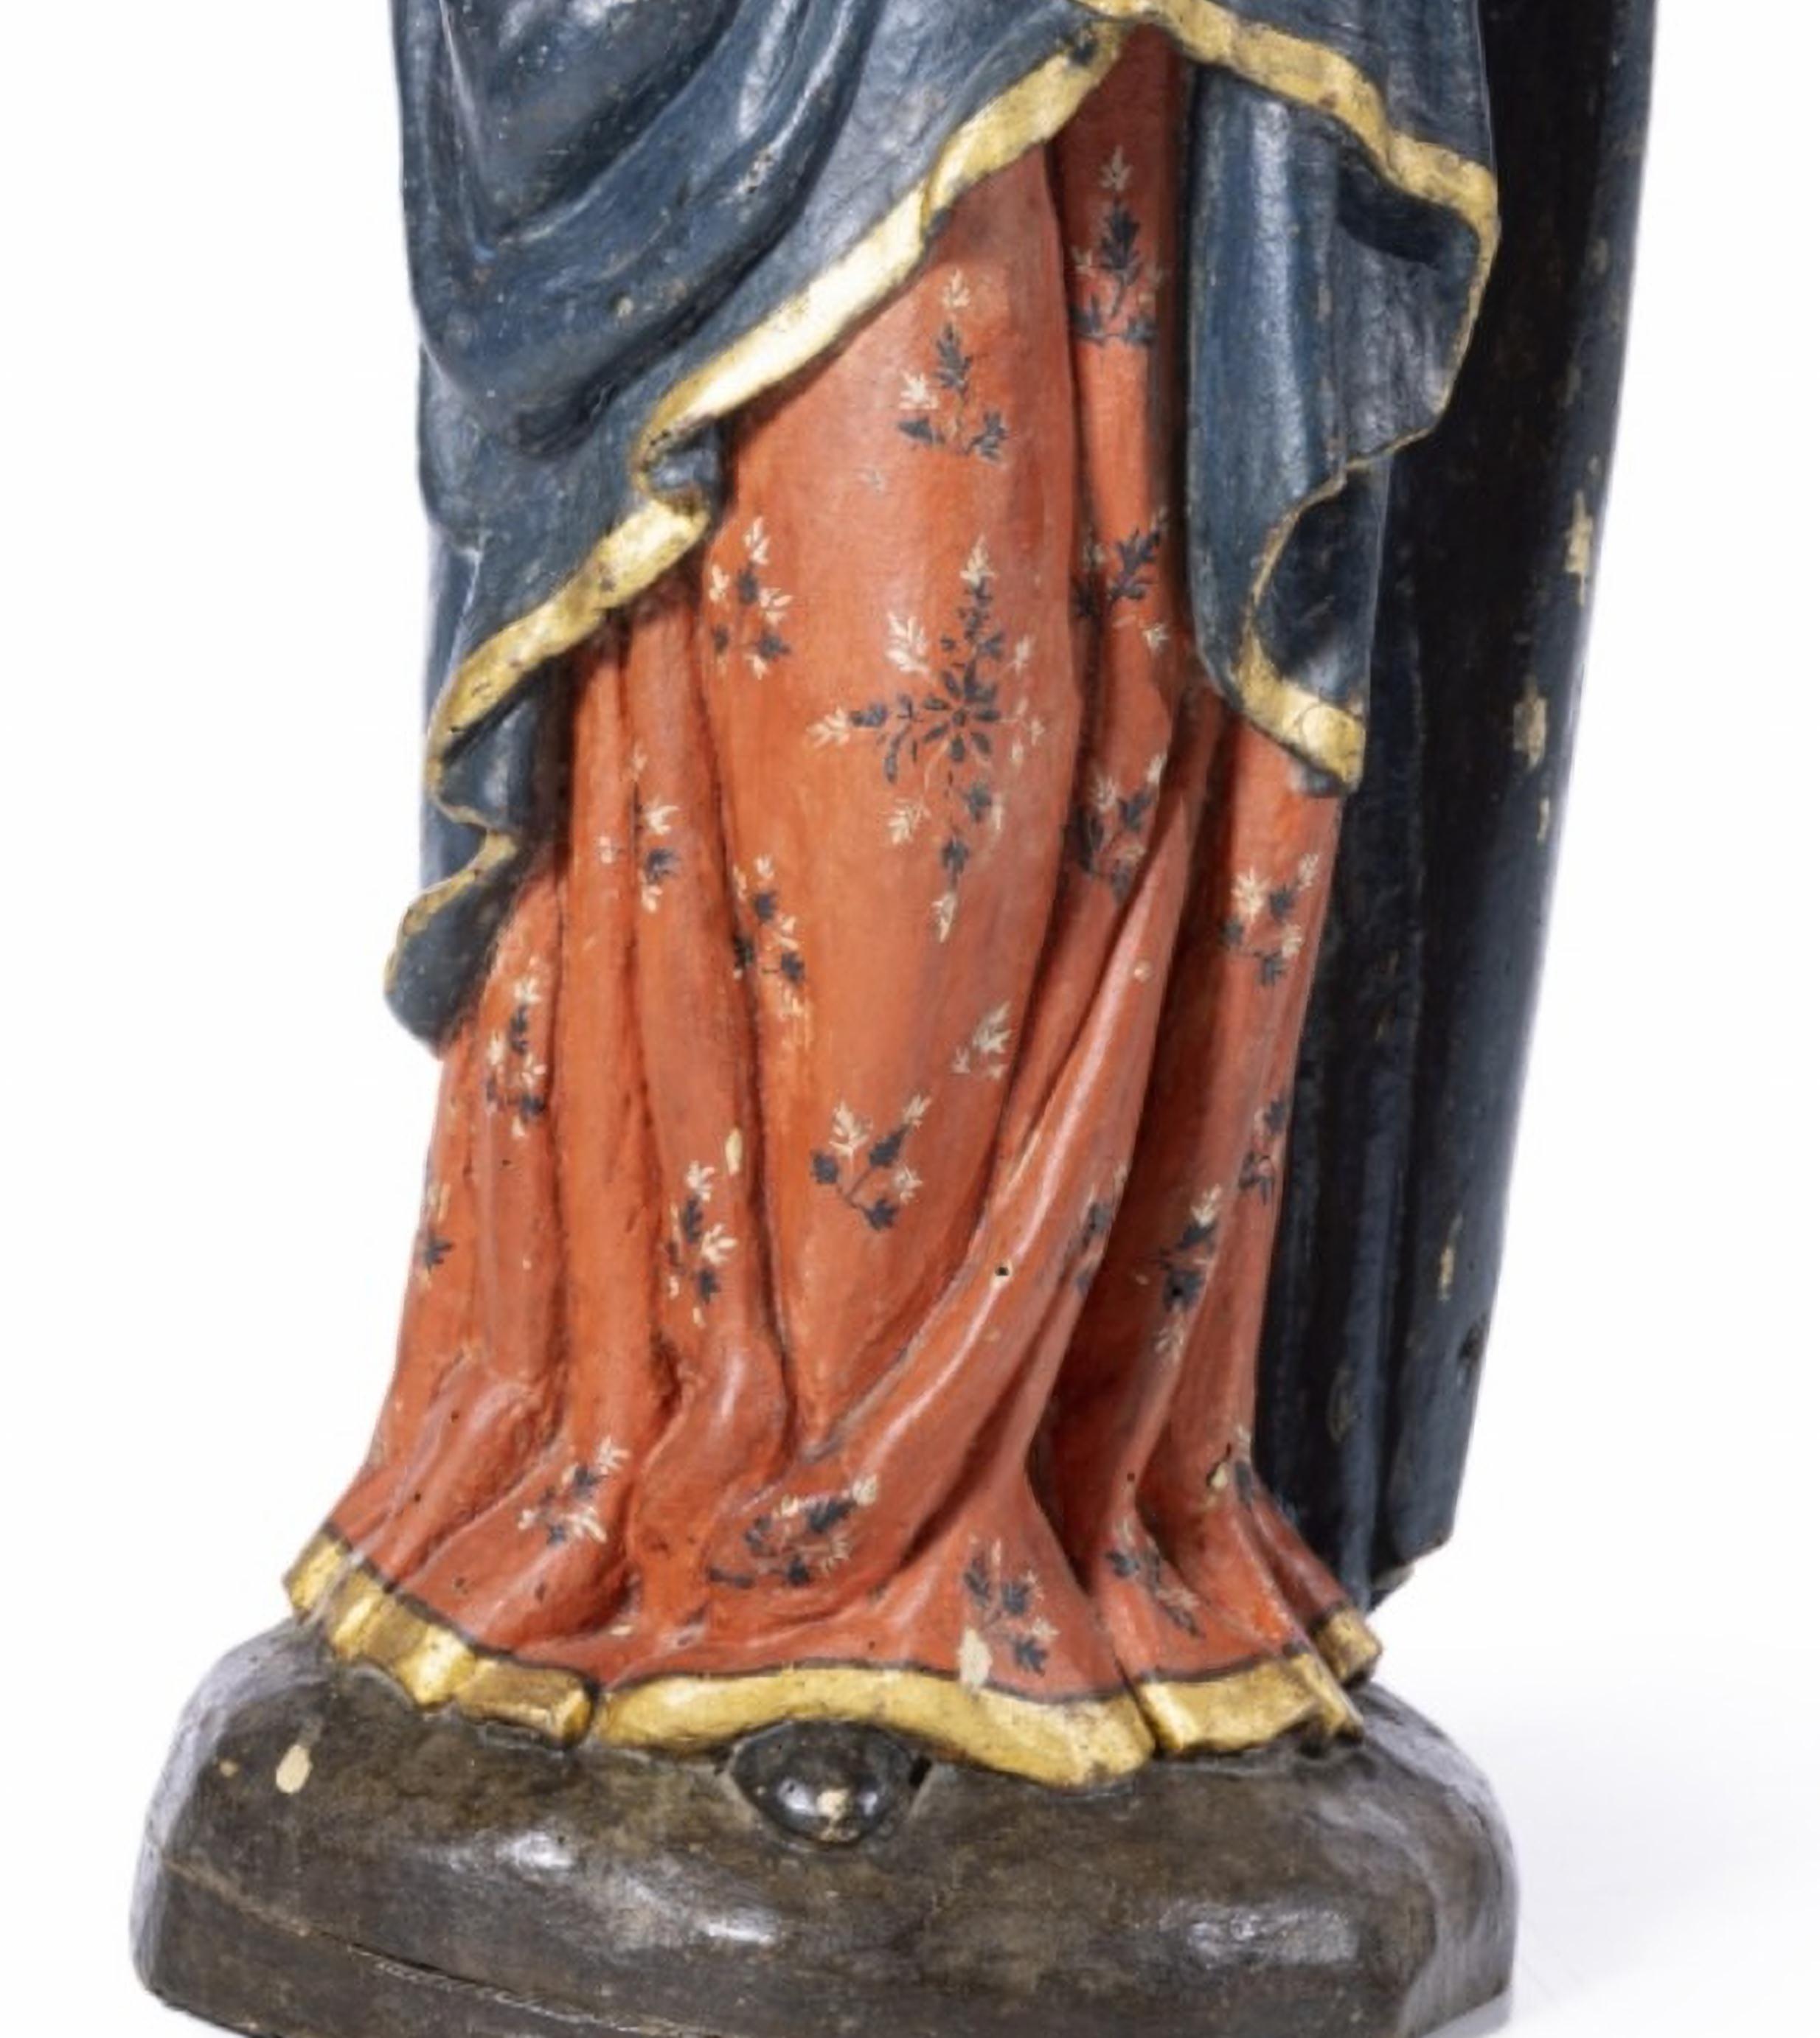 OUR LADY WITH CHILD JESUS SAVIOR OF THE WORLD 17. Jahrhundert

Portugiesische Skulptur 
aus polychromem und vergoldetem Holz. 
Überarbeitungen. 
Höhe: 71 cm
sehr guter Zustand